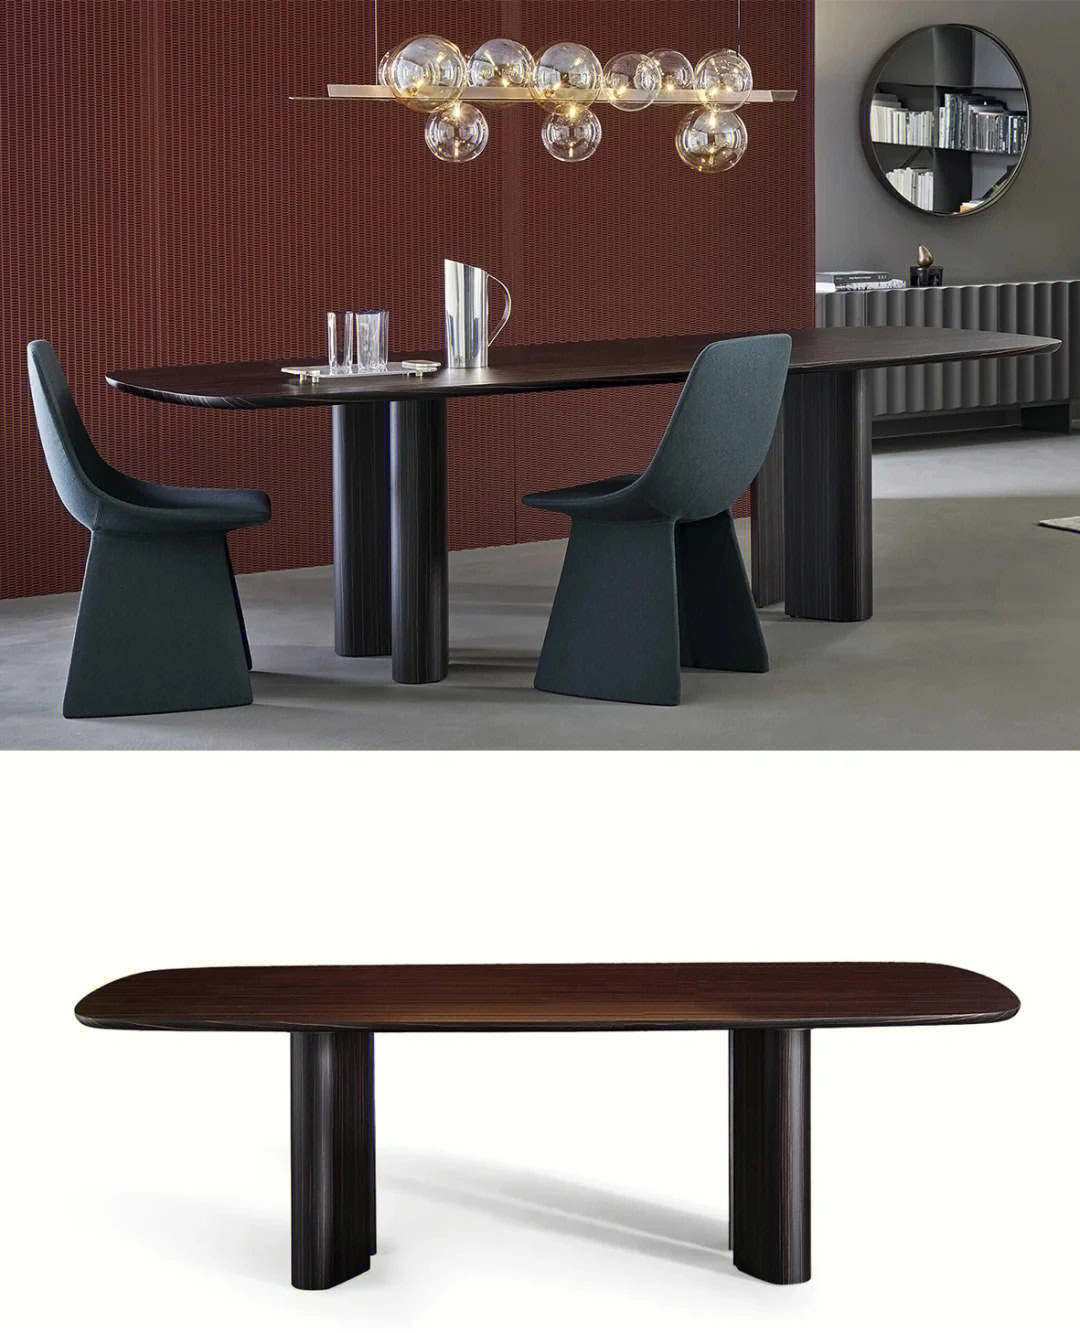 table wood 是9495意大利家具品牌 bonaldo 2022年推出的新款餐桌